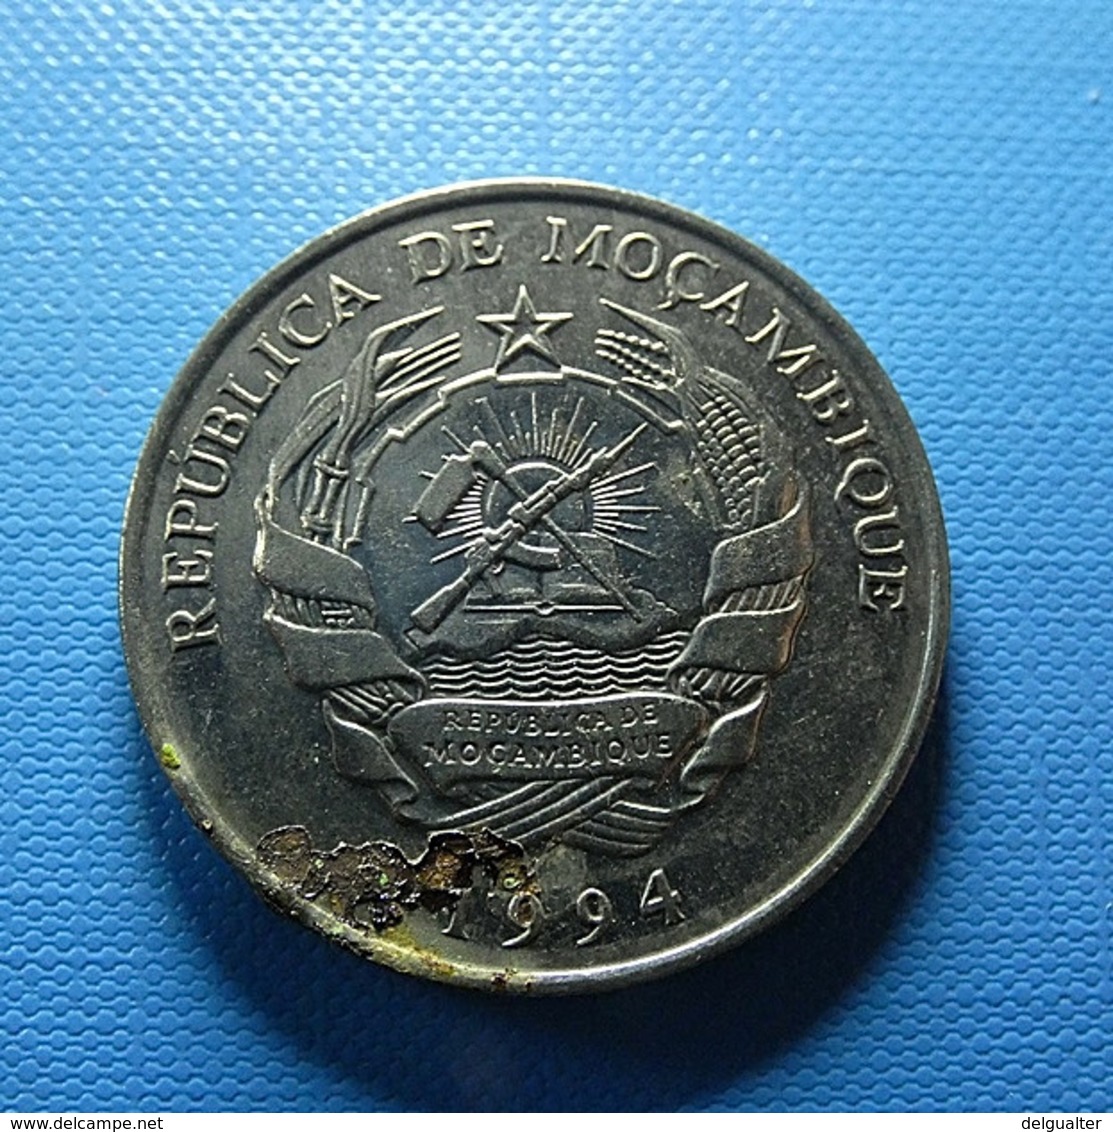 Moçambique 1000 Meticais 1994 - Mozambique